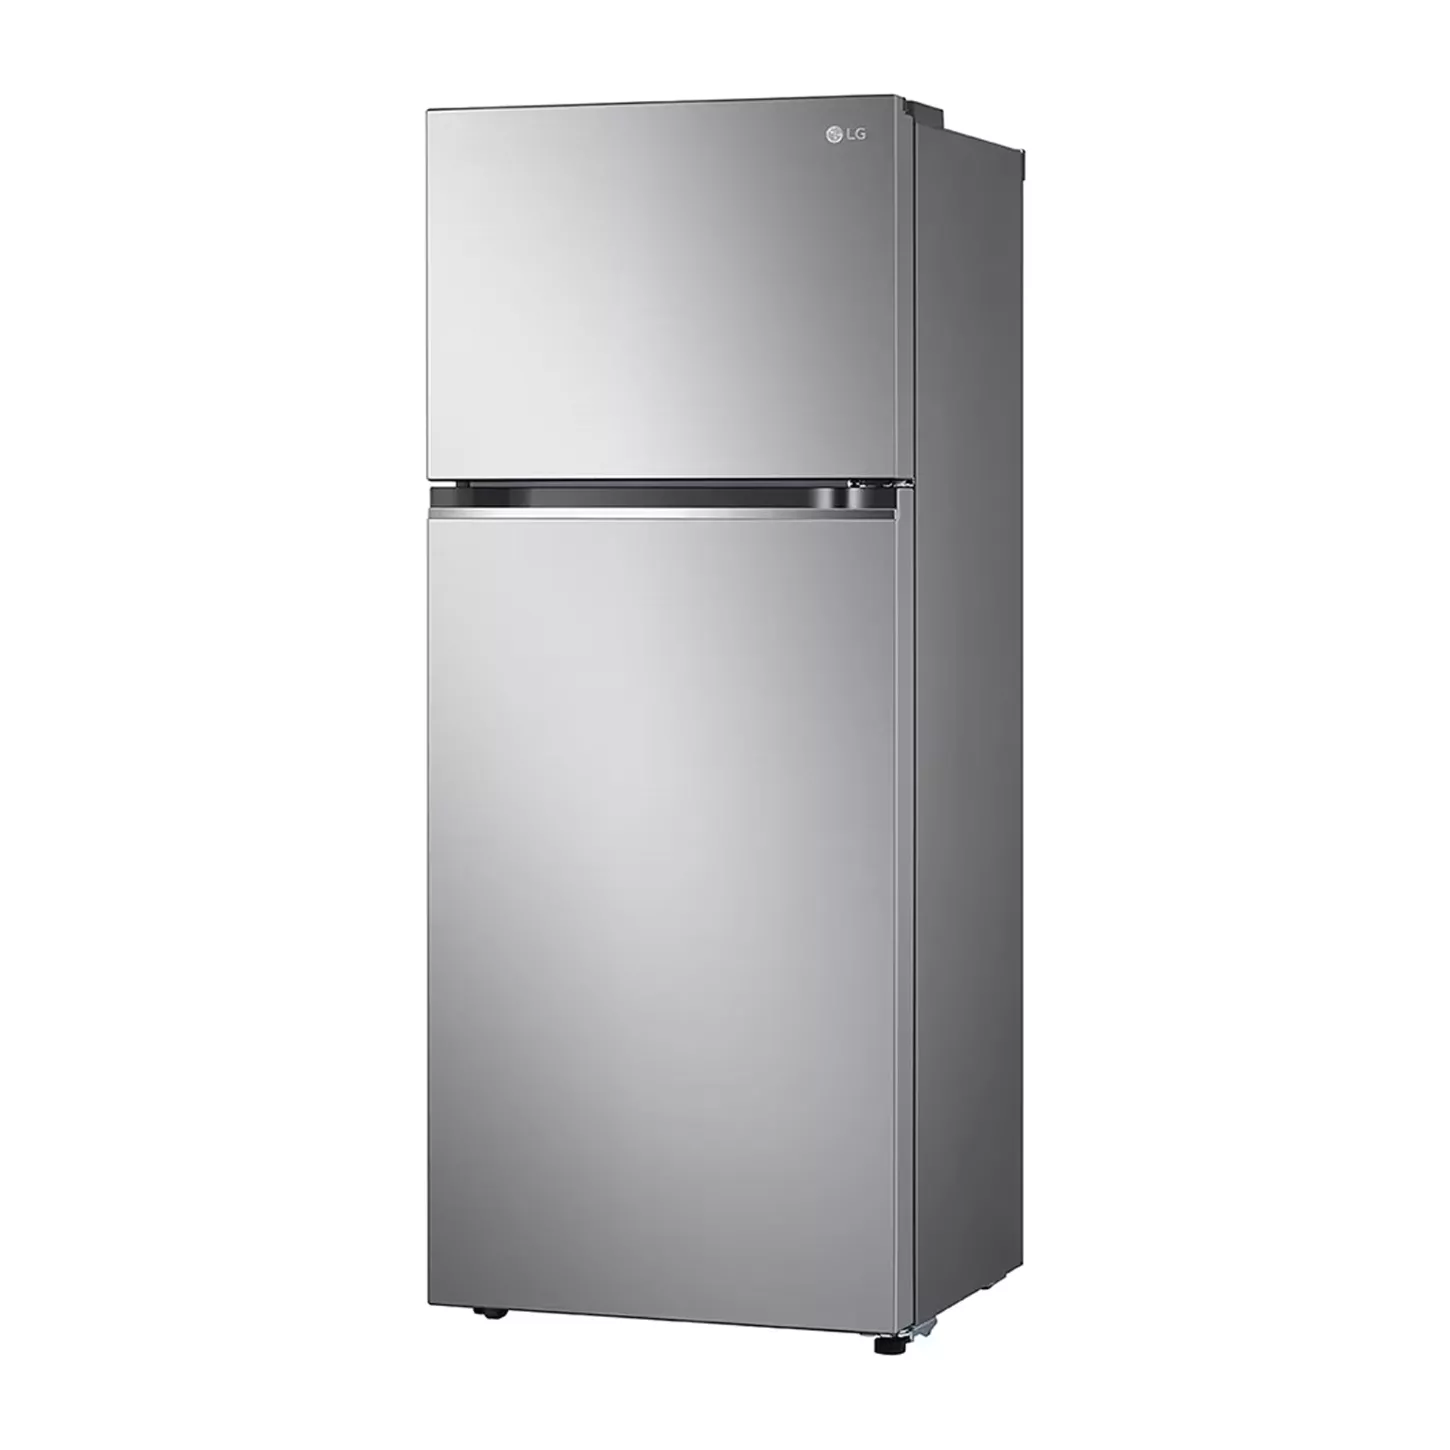 Refrigeradora Top Freezer 13.2pᶟ LG VT38BPP Smart Inverter